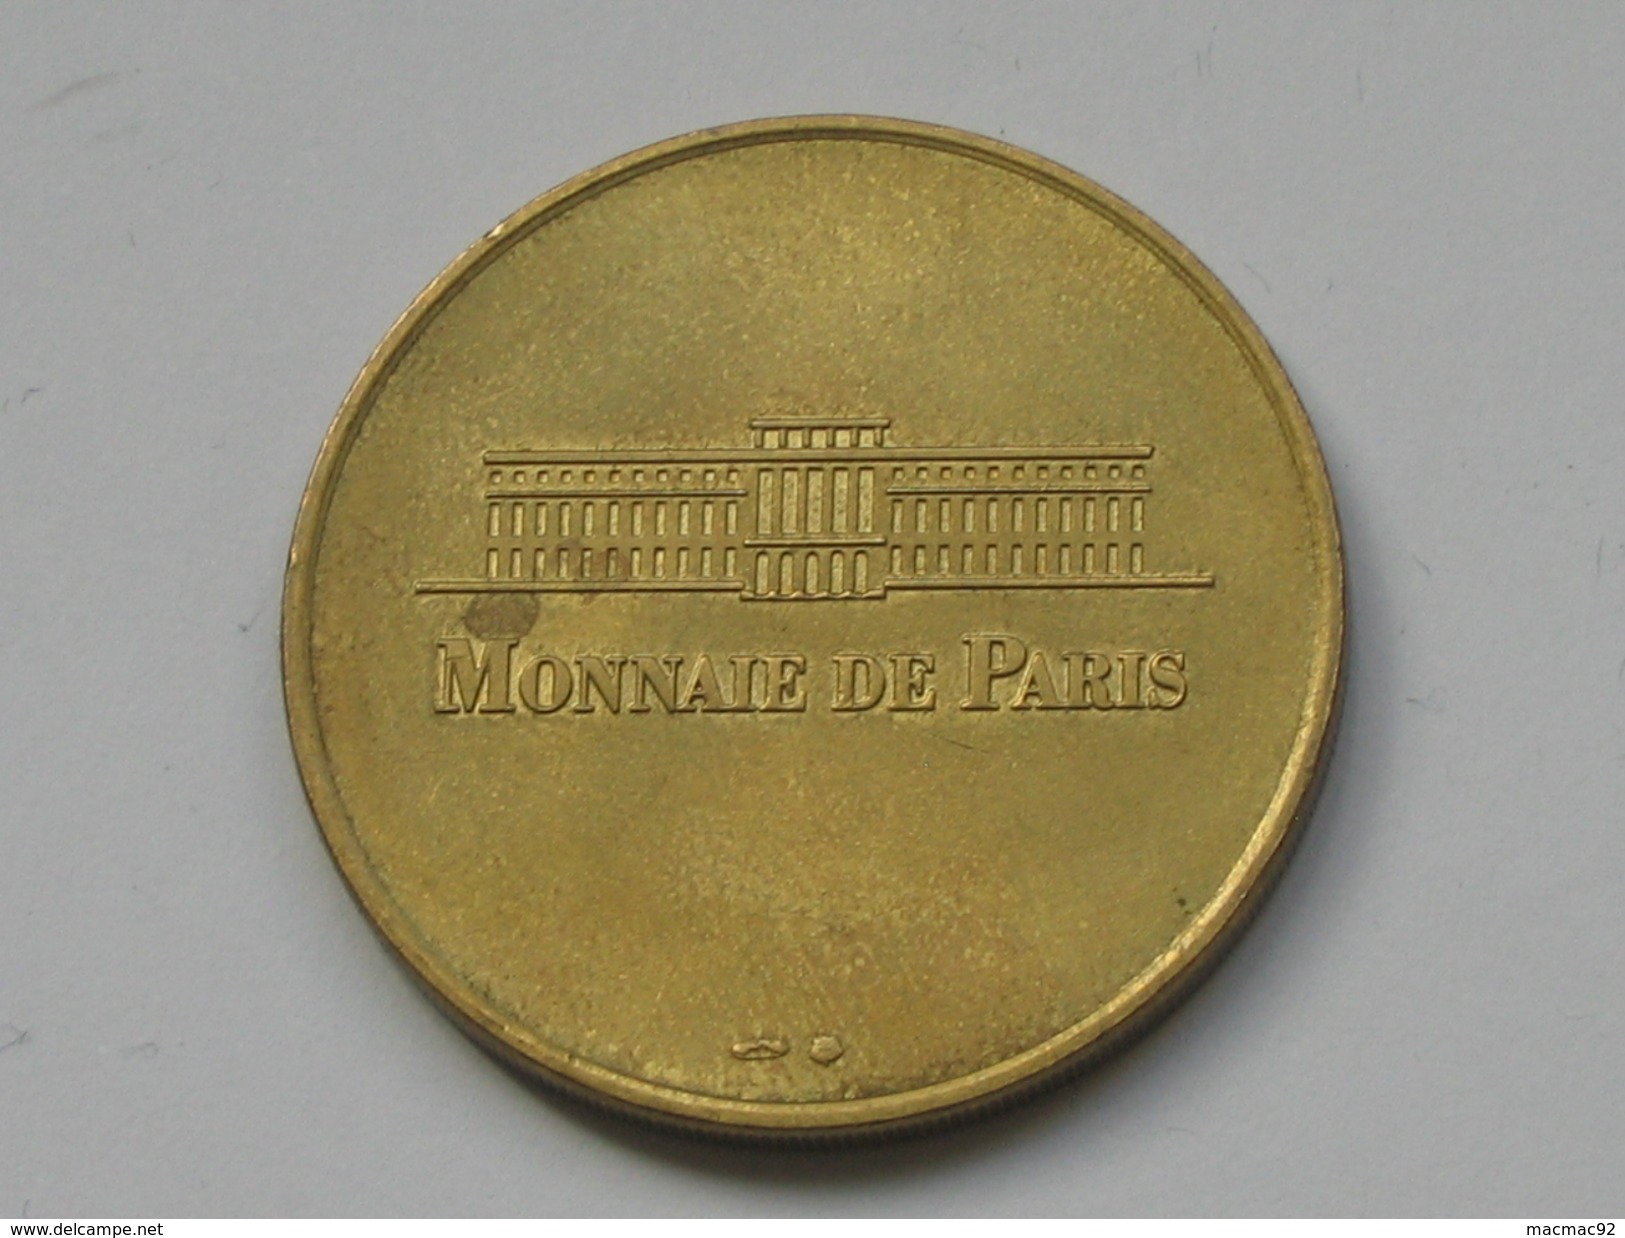 Monnaie De Paris 1997-1998 - DOME DES INVALIDES - TOMBEAU DE NAPOLEON    **** EN ACHAT IMMEDIAT  **** - Non-datés